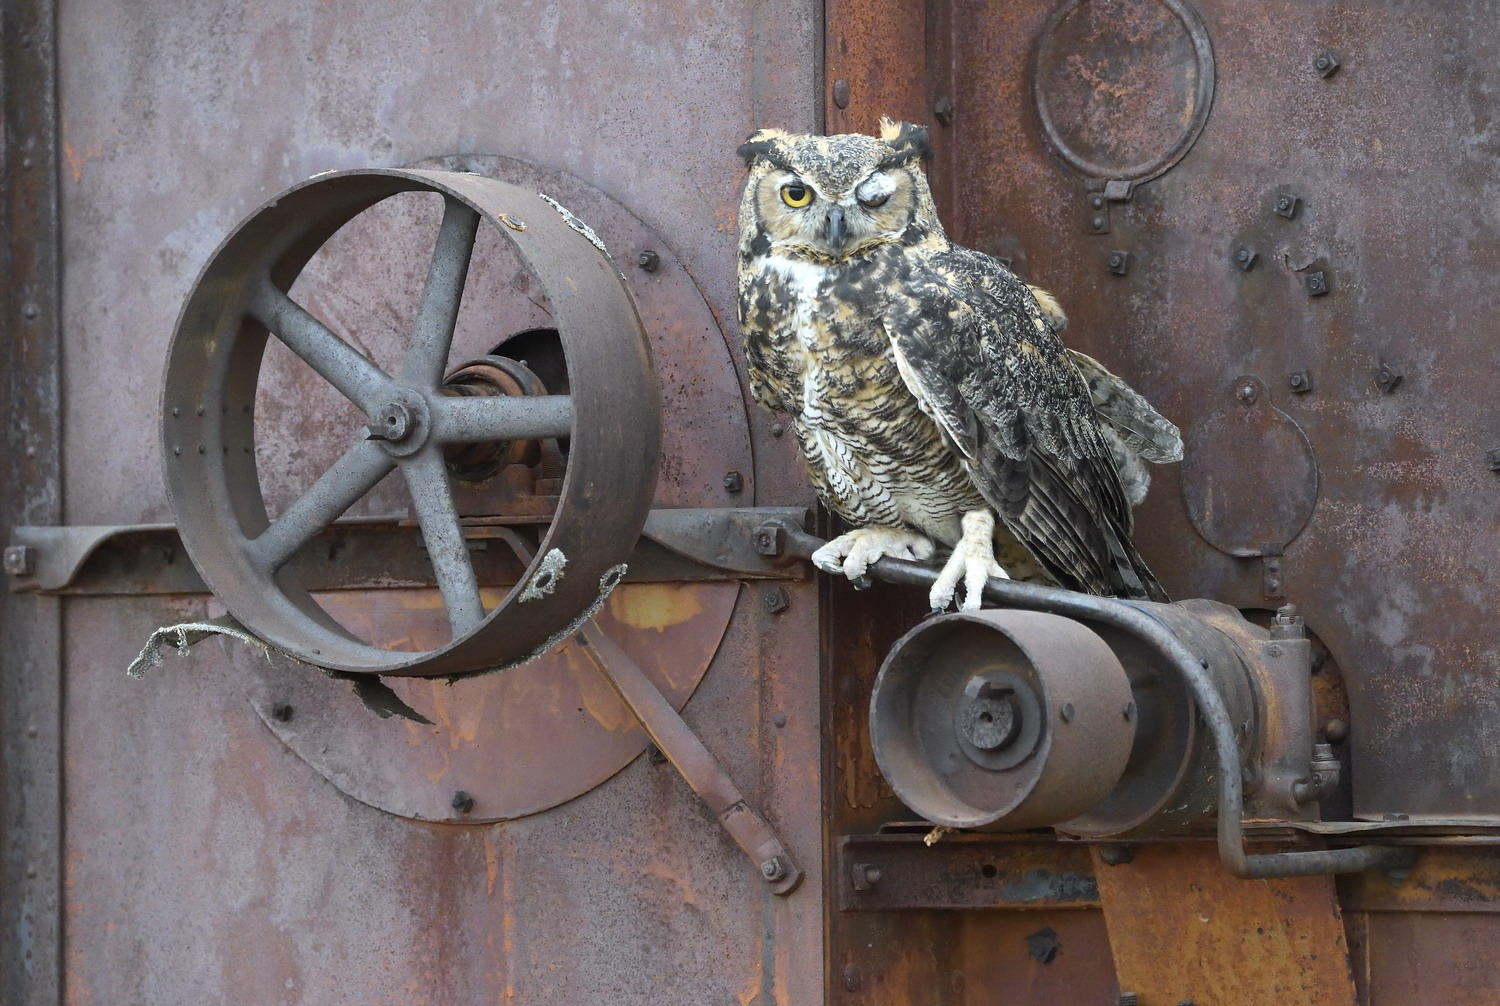 DSC_12120_1A3 - Great Horned Owl